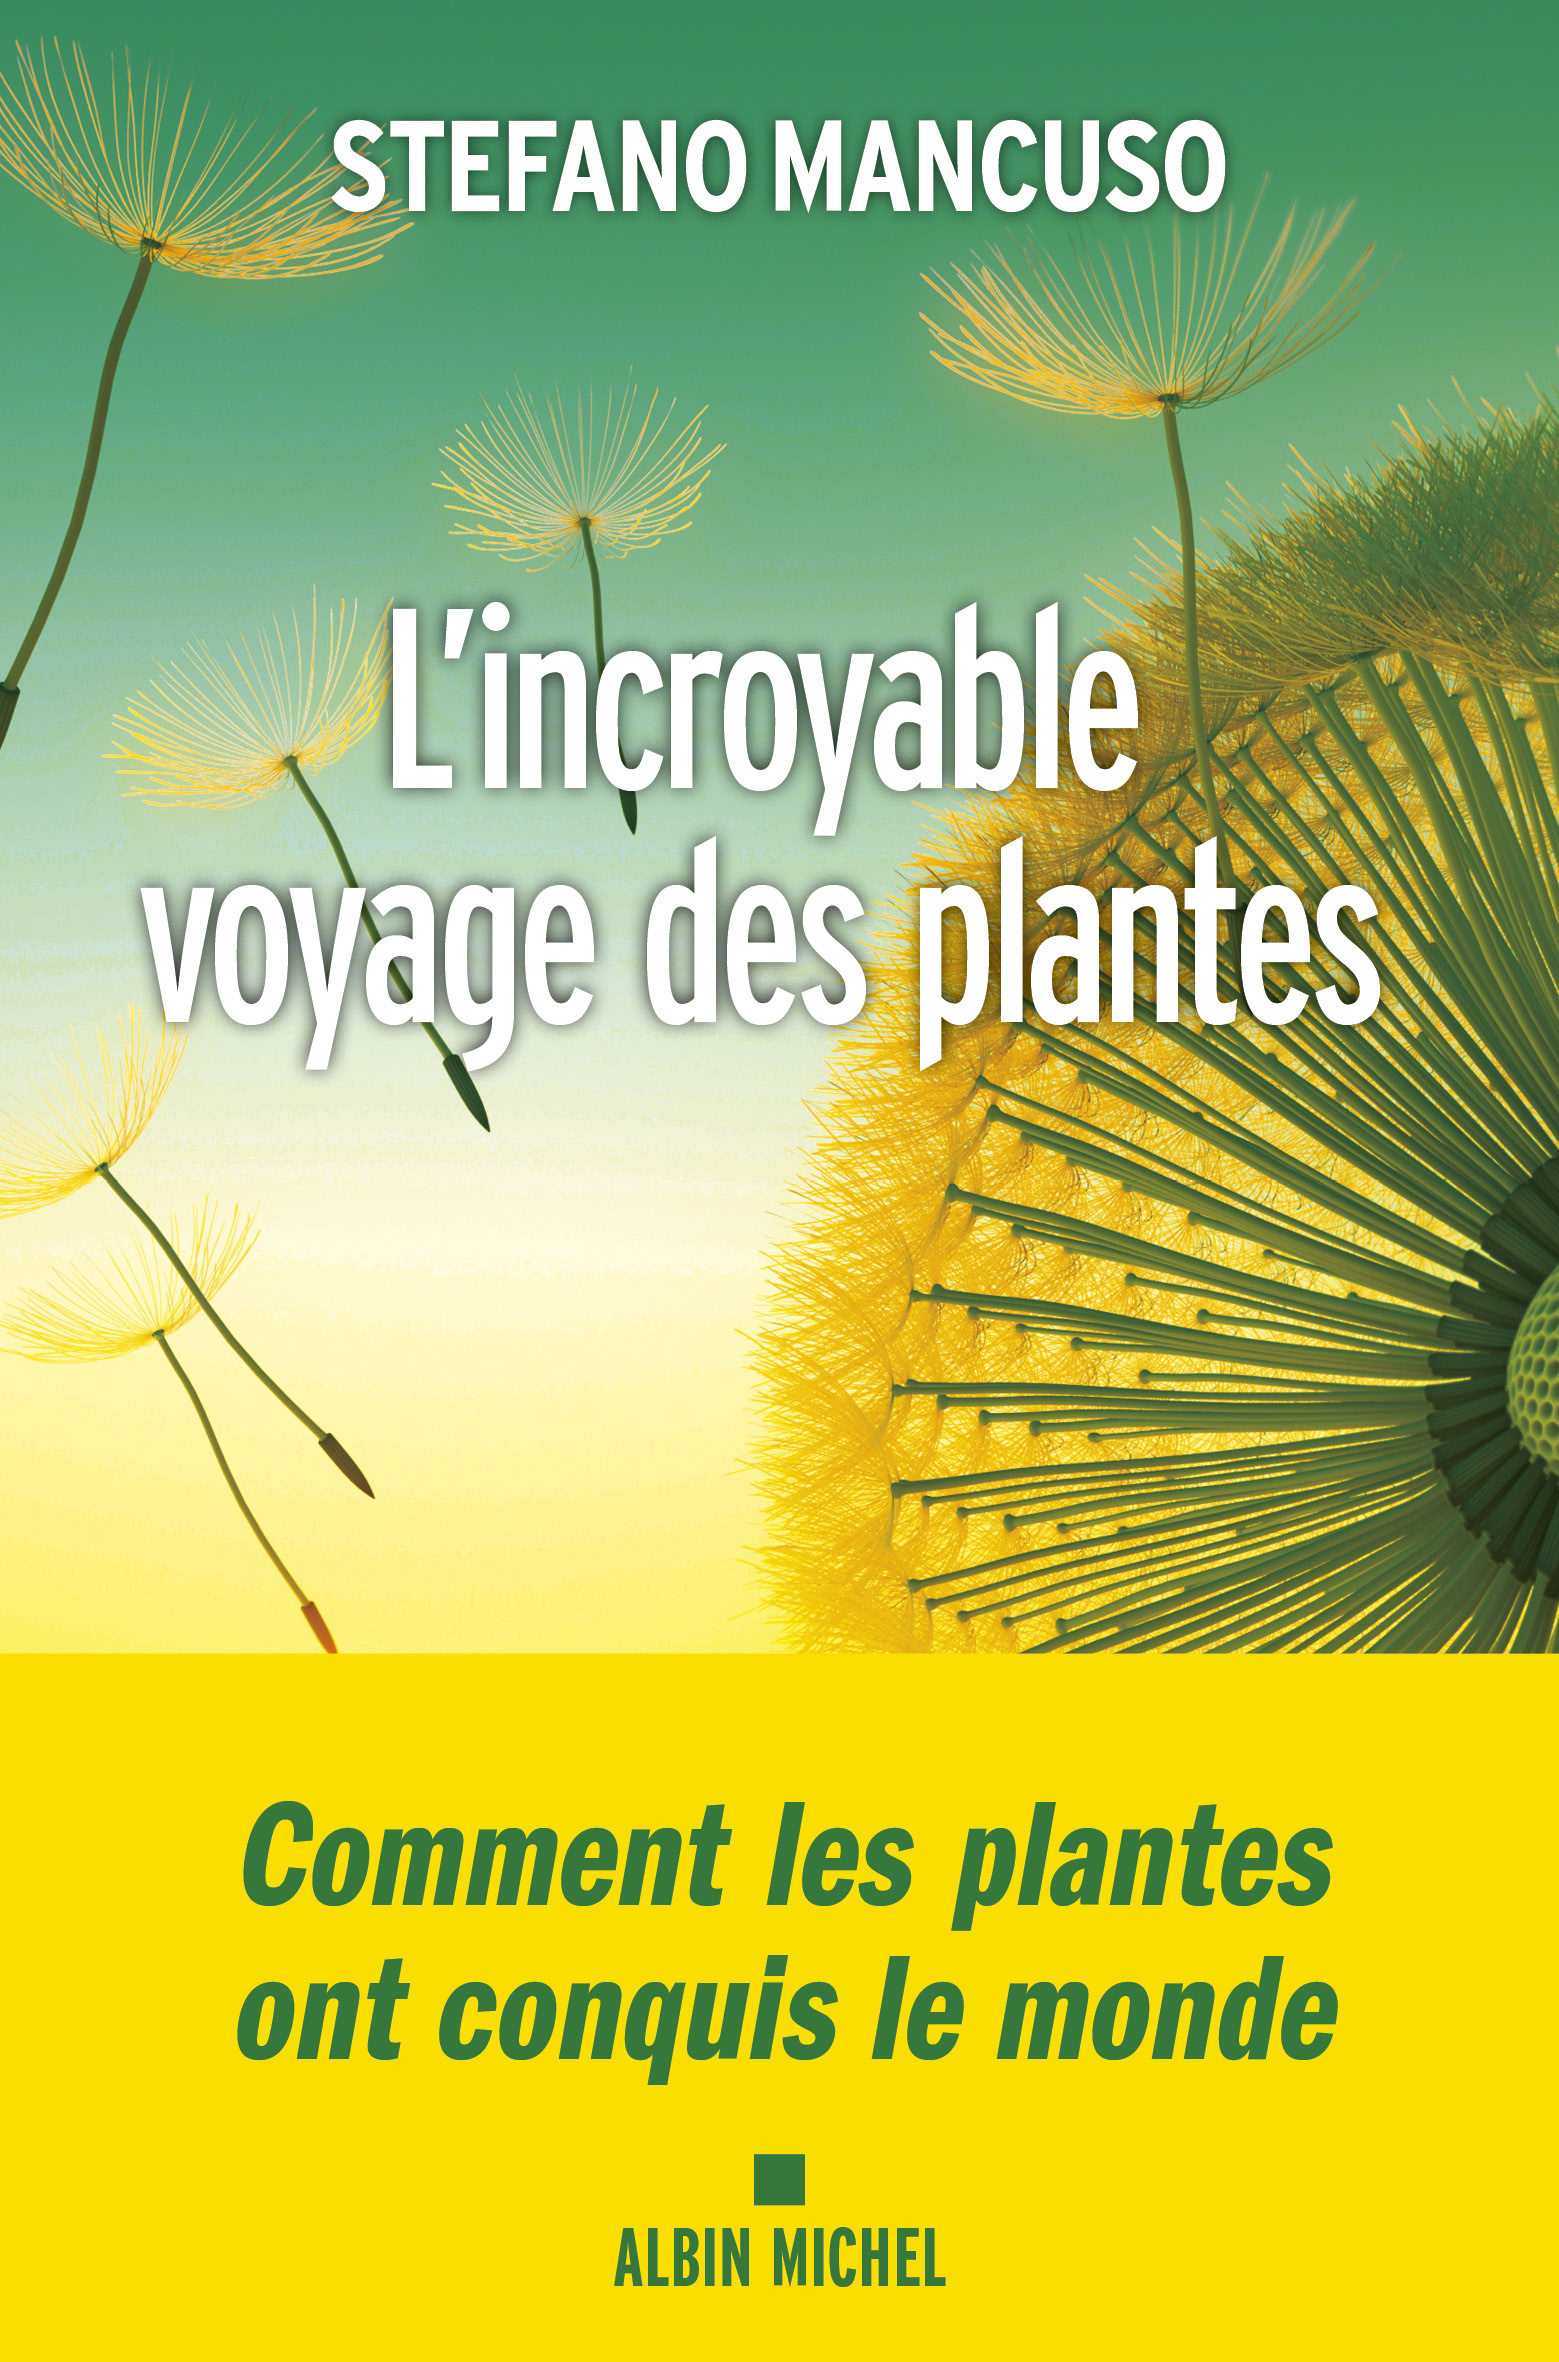 Couverture du livre L'Incroyable voyage des plantes